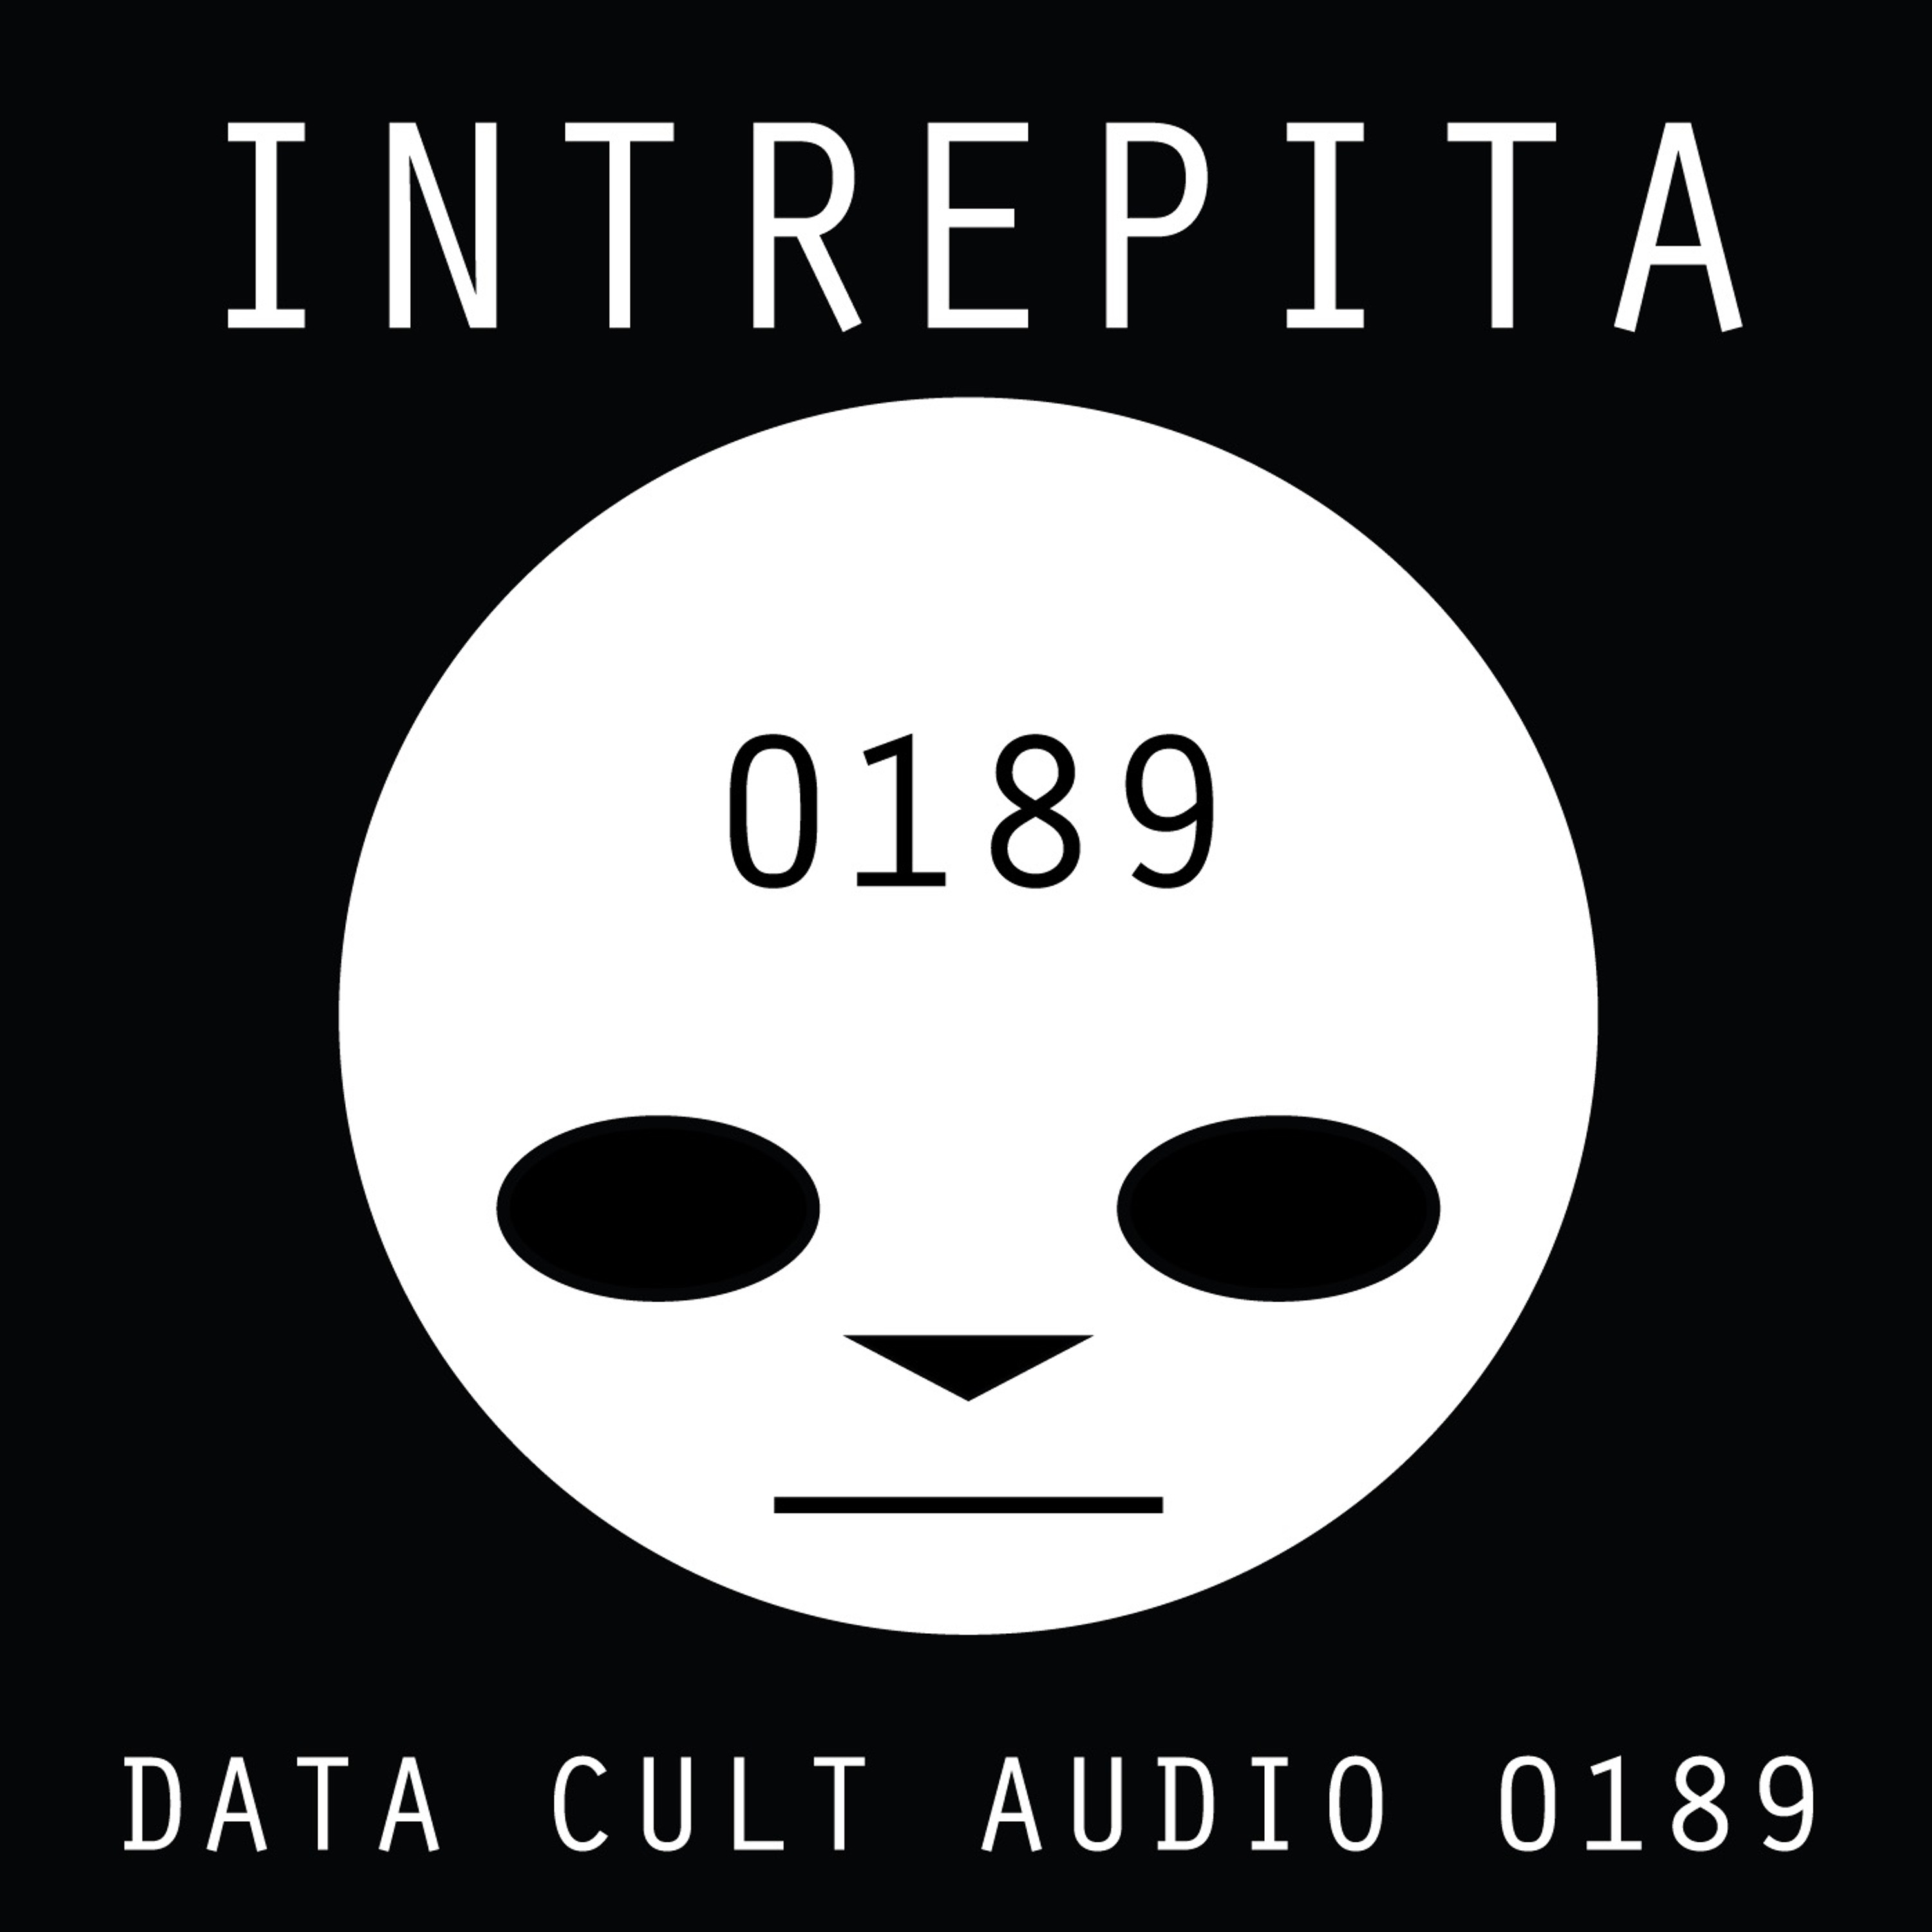 Data Cult Audio 0189 - Intrepita